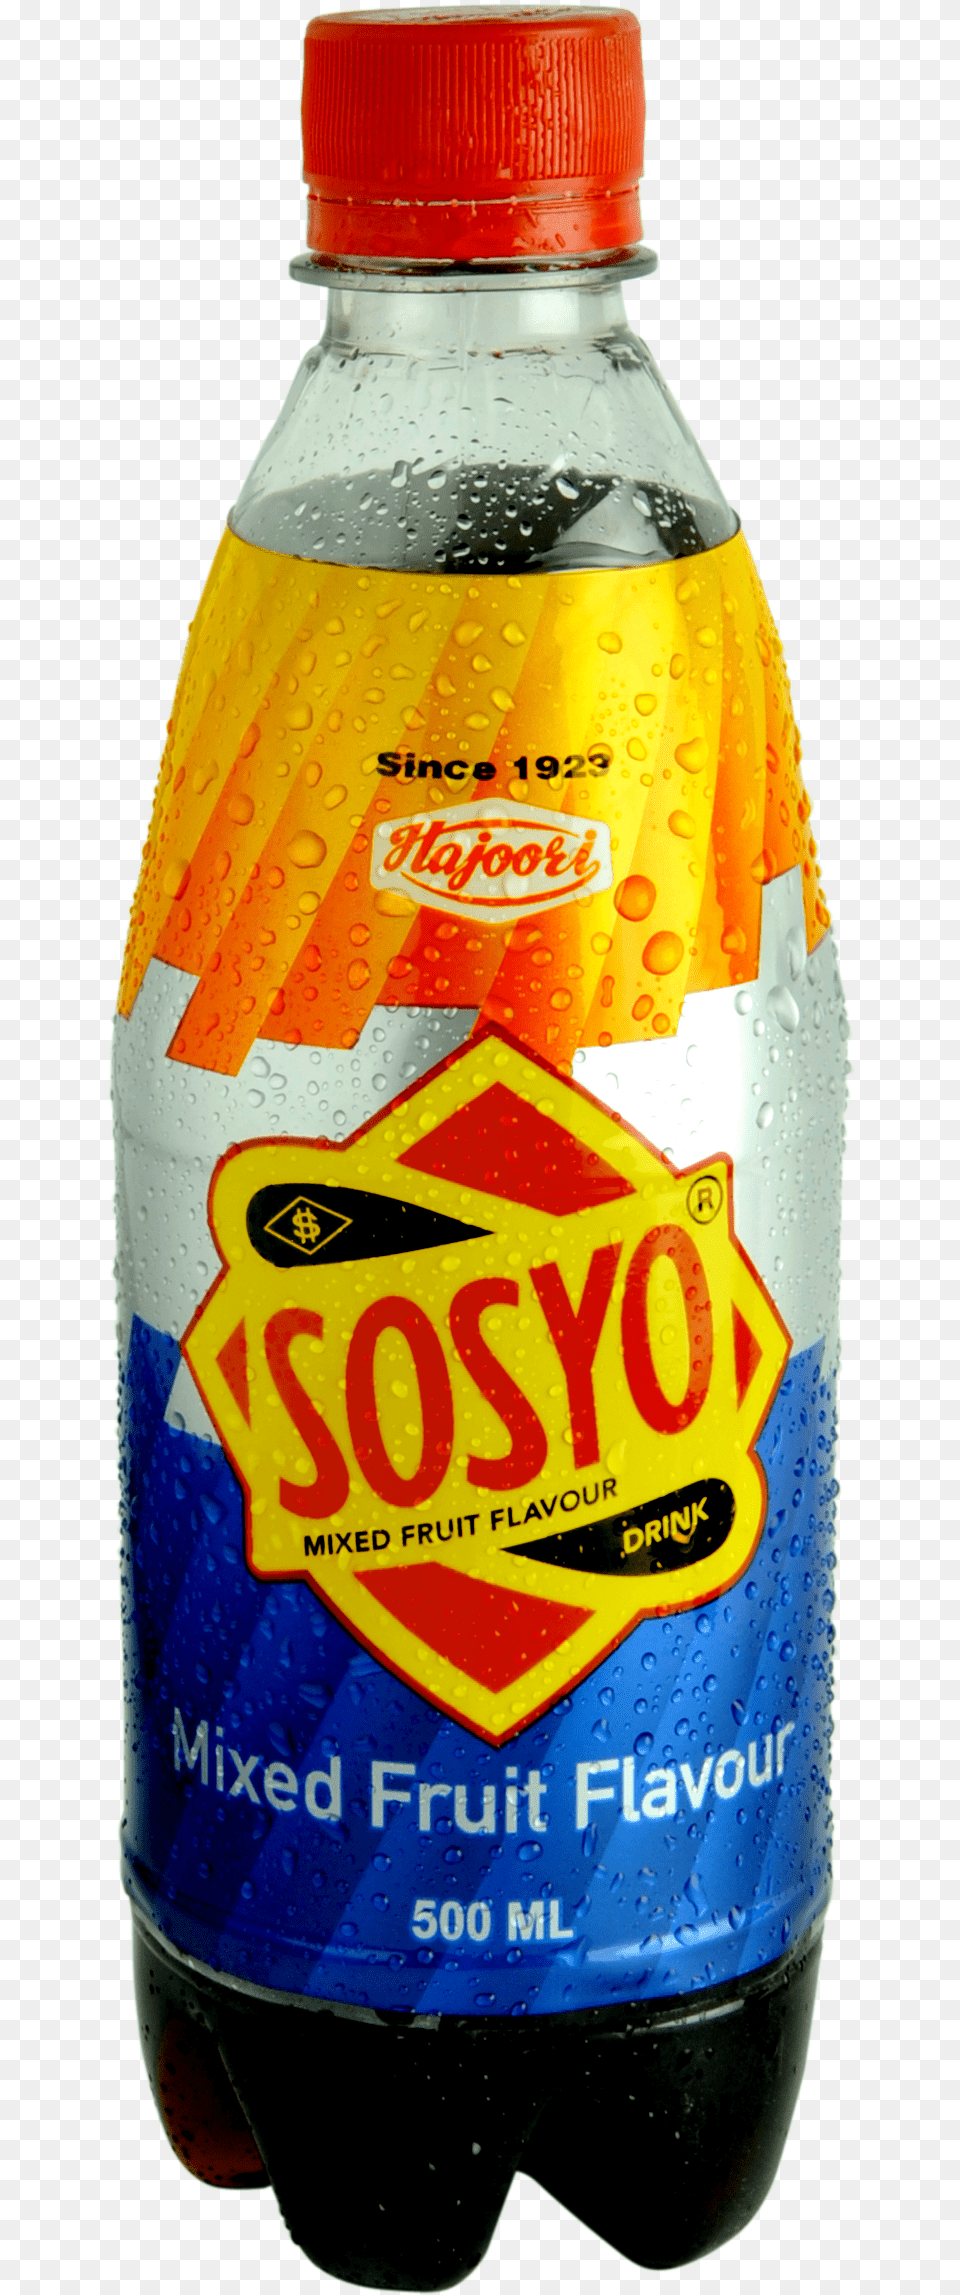 Sosyo, Beverage, Bottle, Pop Bottle, Soda Free Transparent Png